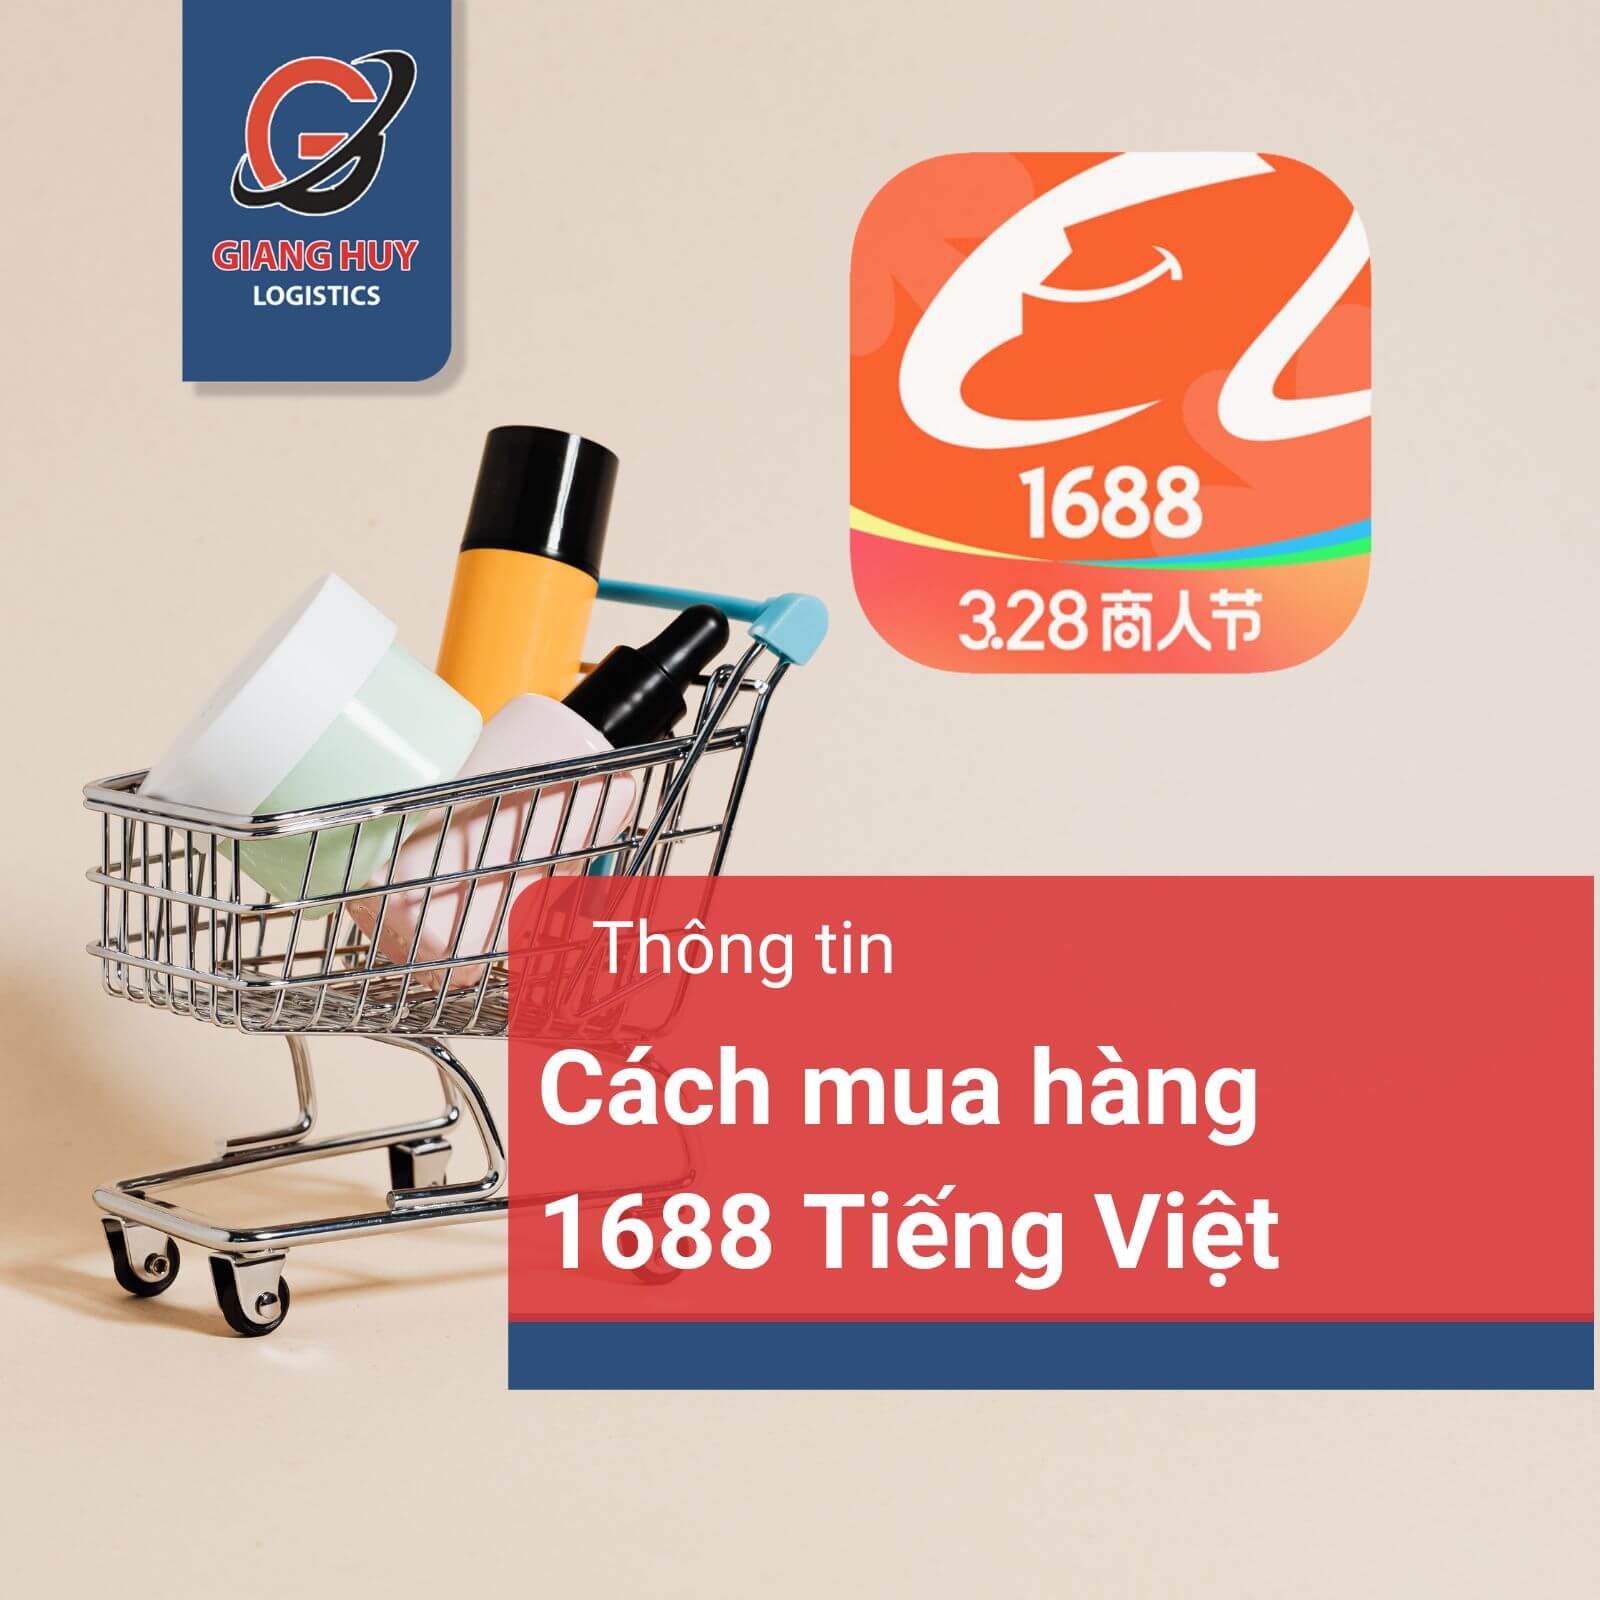 Cách mua hàng 1688 bằng Tiếng Việt